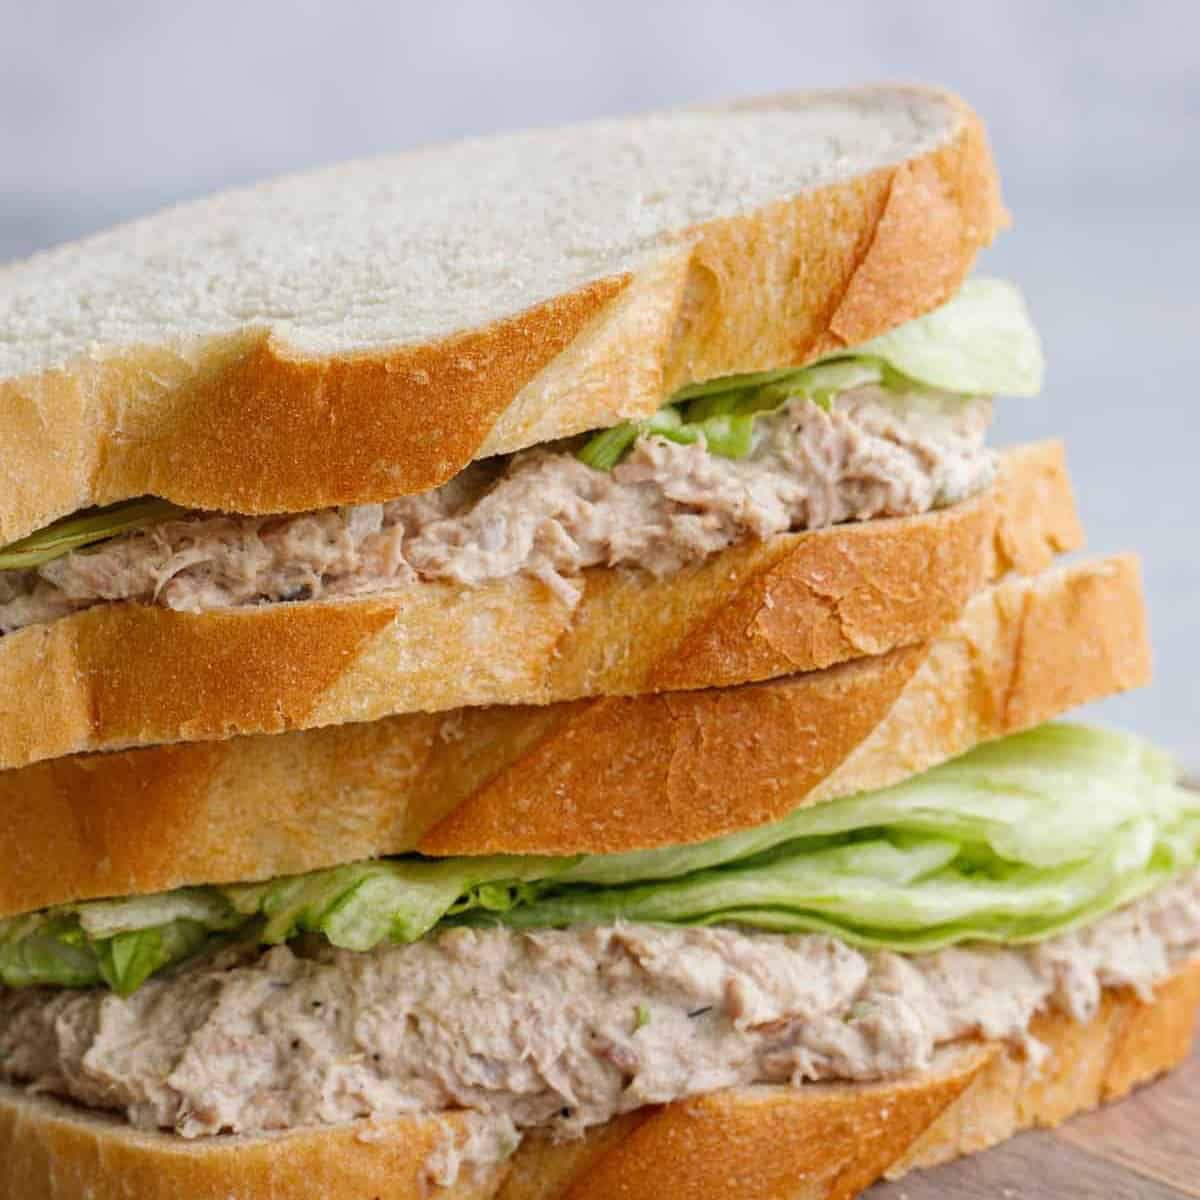 Tuna Sandwich… Yes or No? 🤔